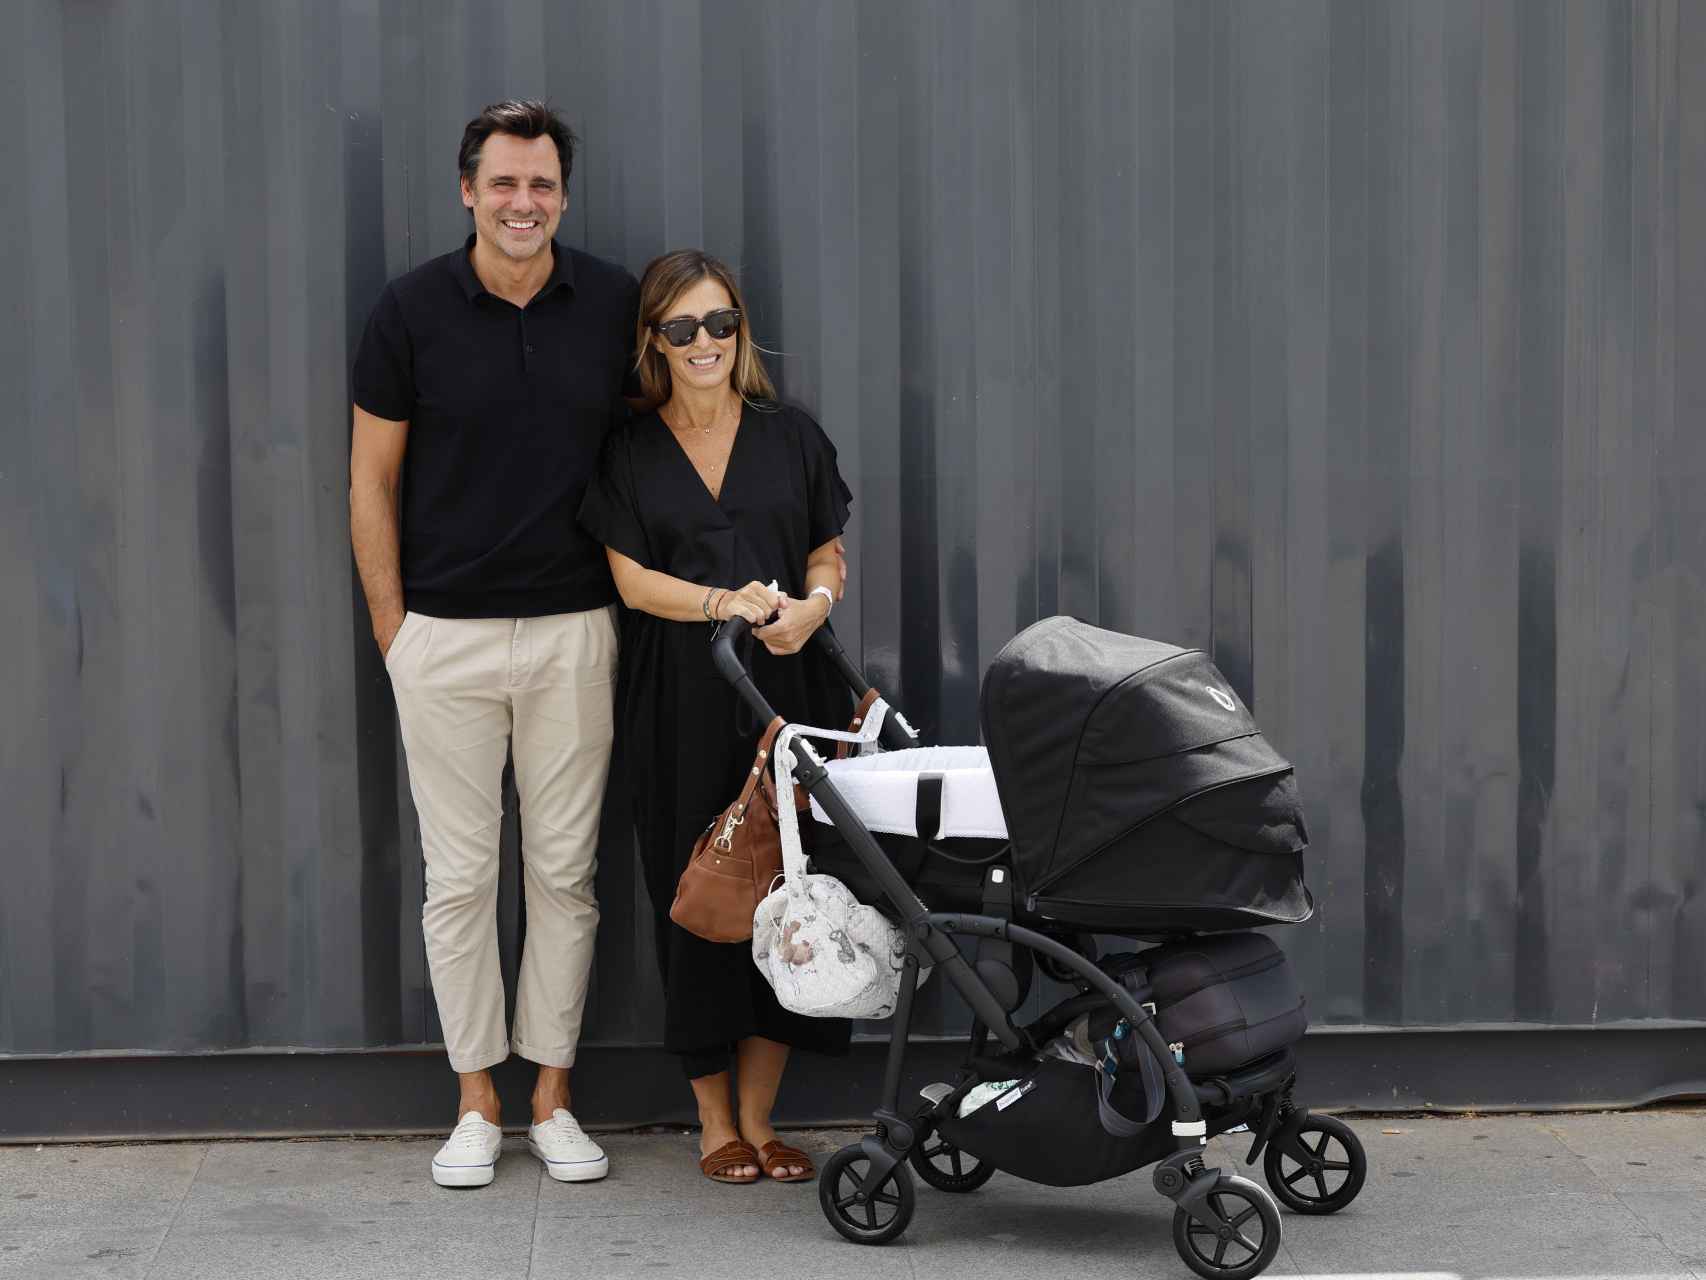 Ion Aramendi y su esposa, al salir al hospital con su hija pequeña.